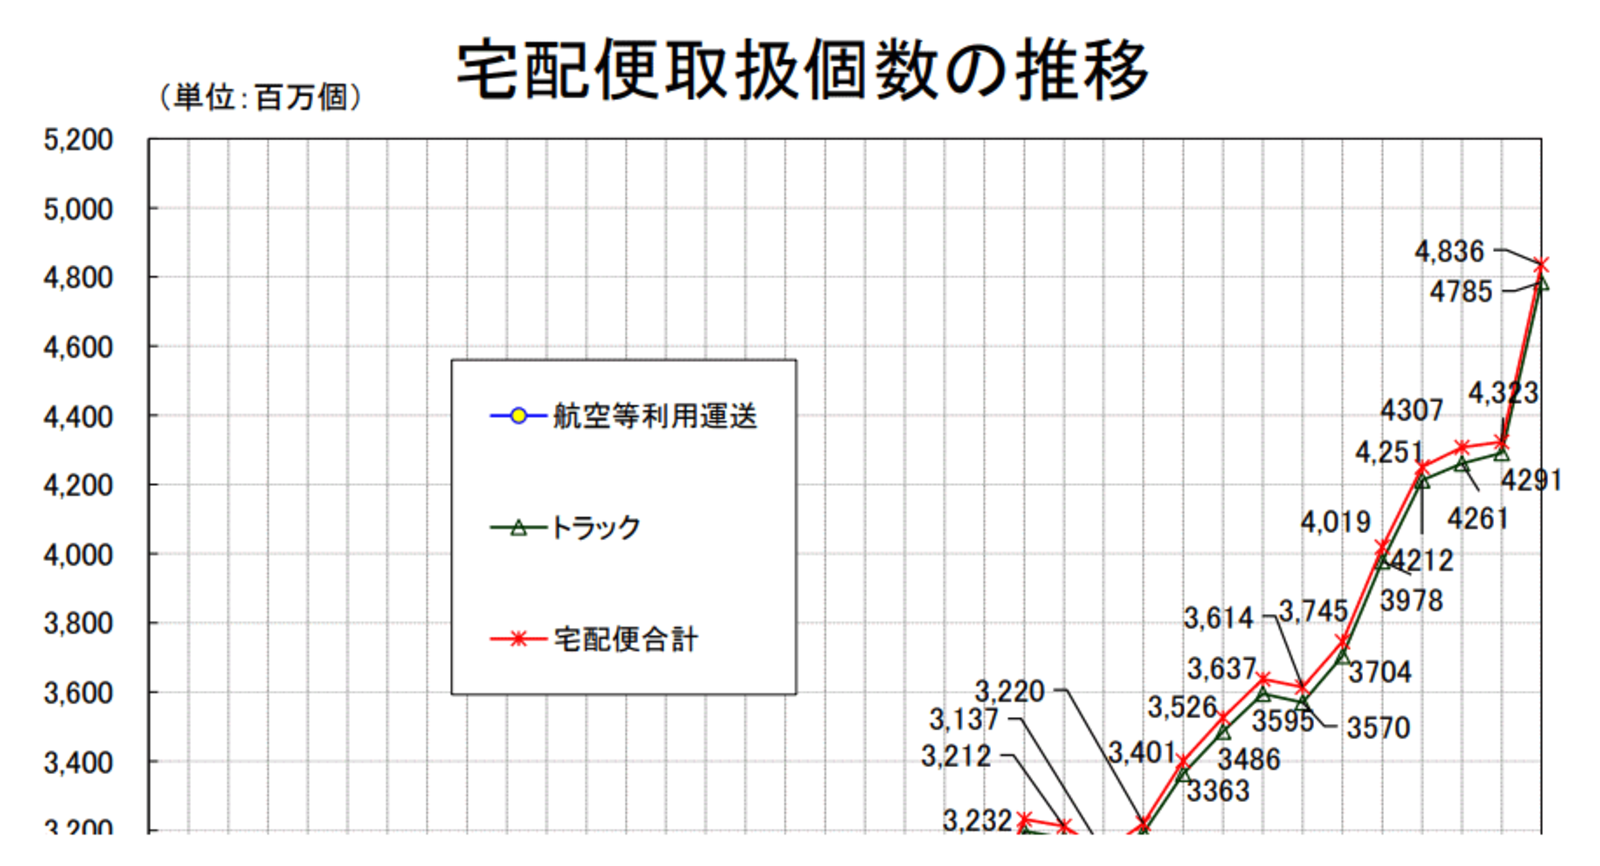 ヤマト、佐川、日本郵便など宅配便取扱個数は48億個超【2020年度